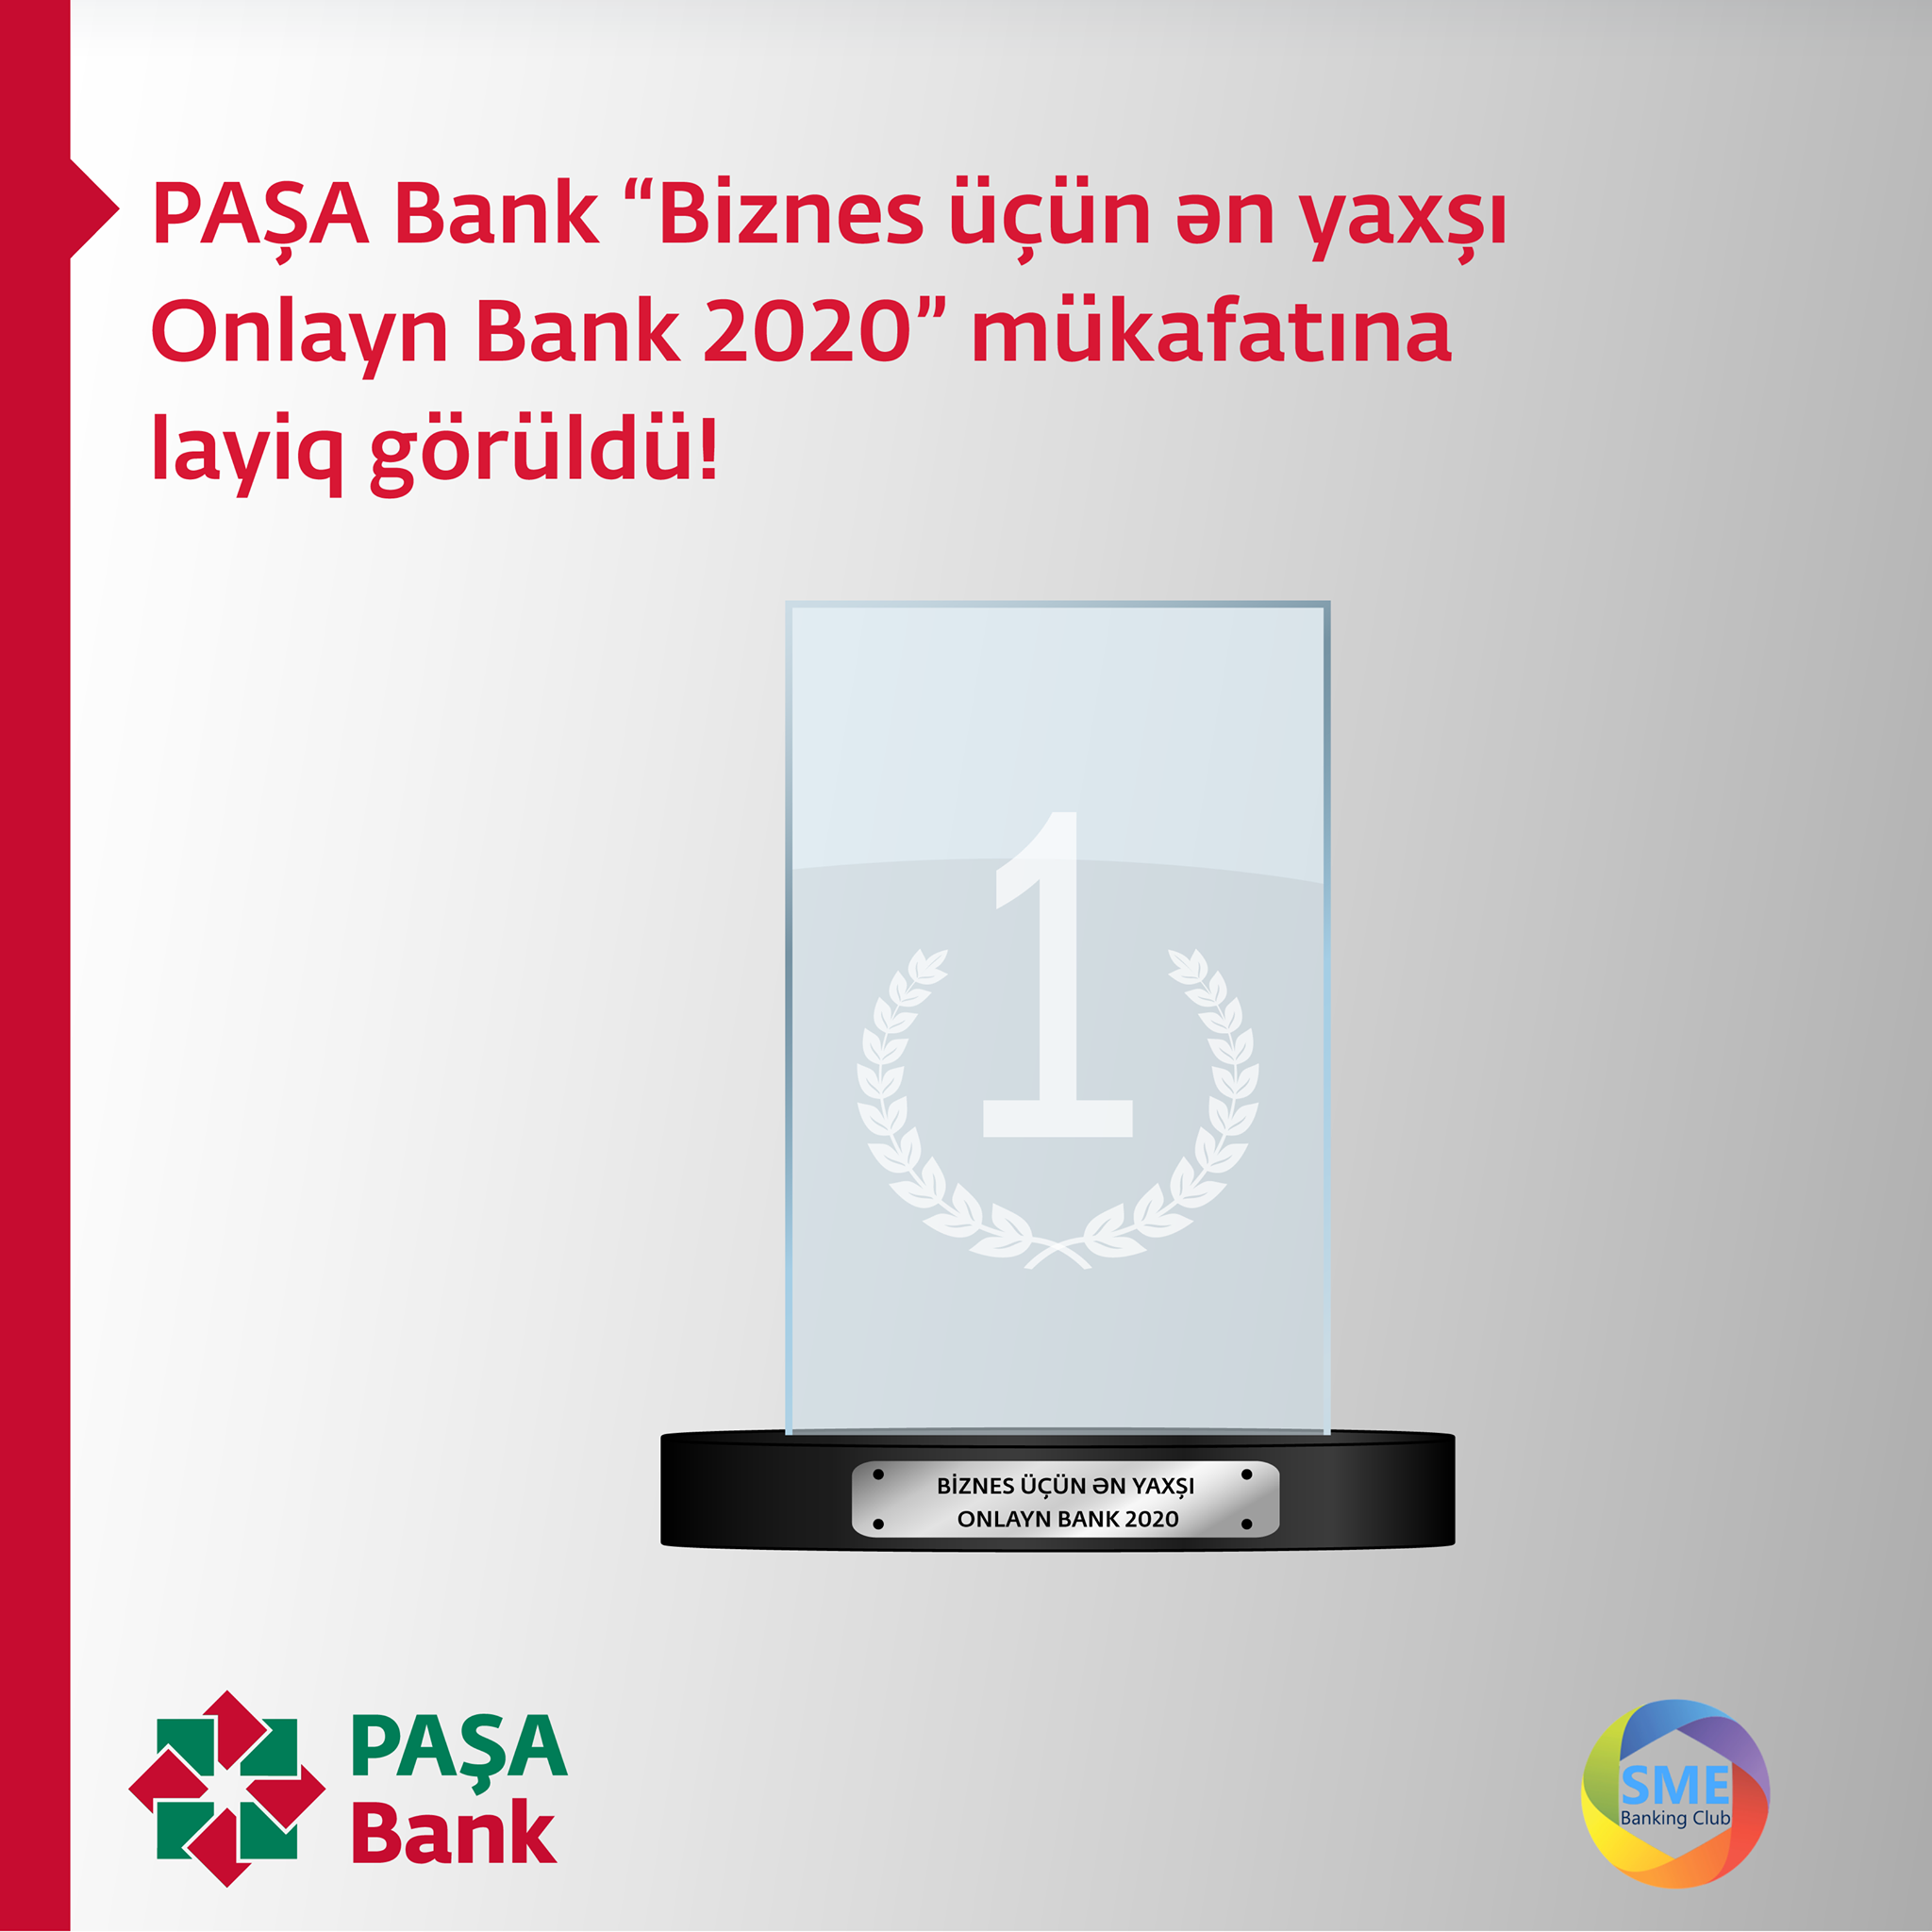 PAŞA Bank “Biznes üçün ən yaxşı Onlayn Bank 2020” mükafatına layiq görüldü